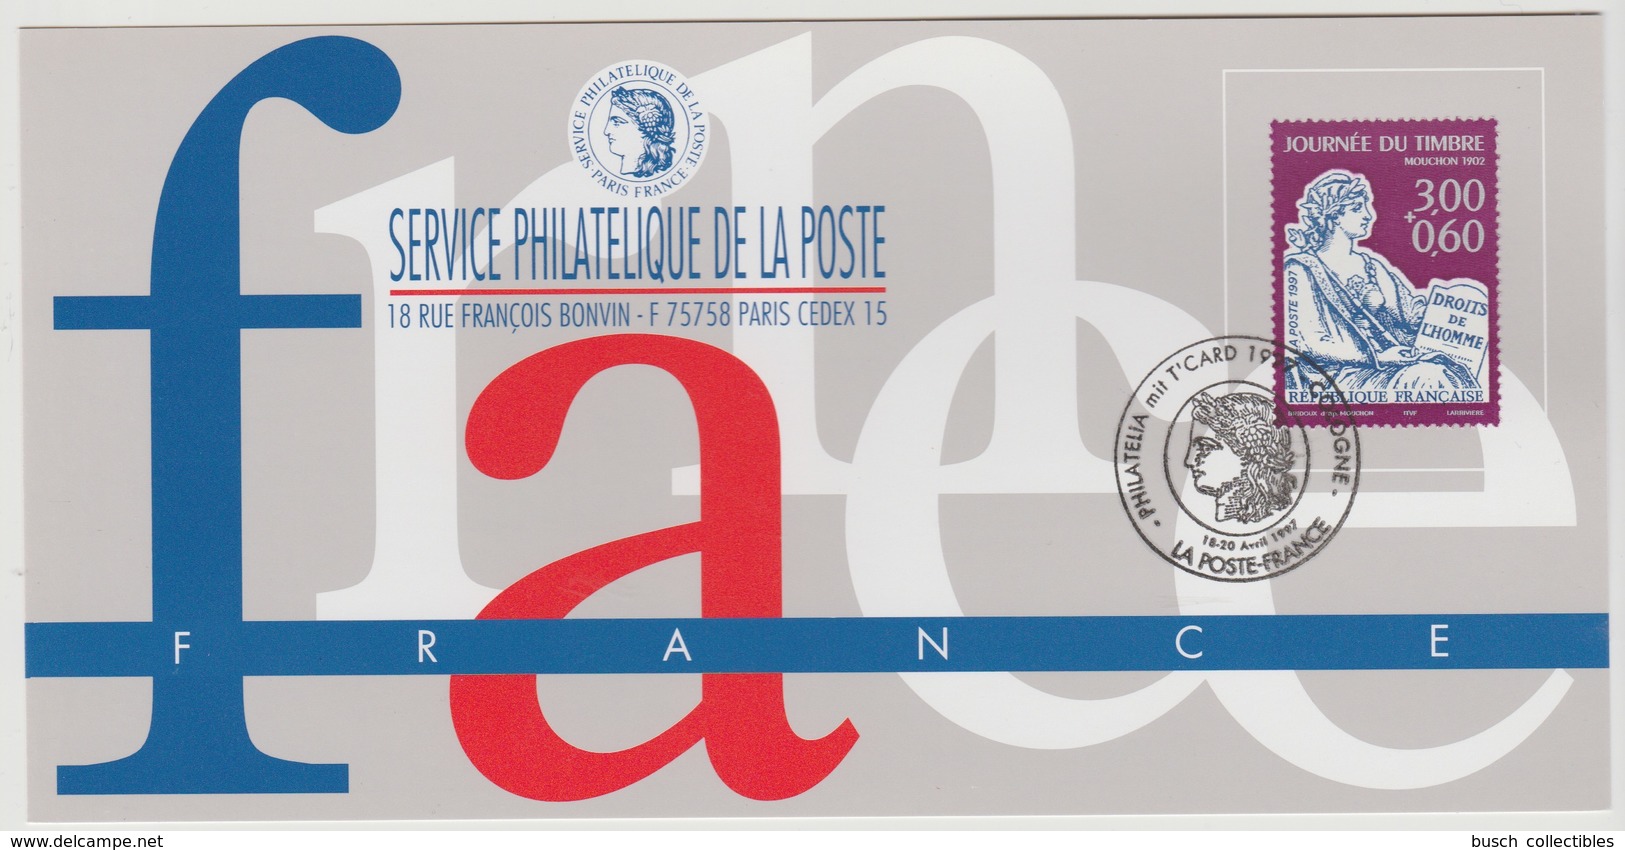 147 Carte Officielle Exposition Internationale Exhibition Cologne Köln 1997 France FDC Journée Du Timbre Mouchon 1902 - Stamp's Day